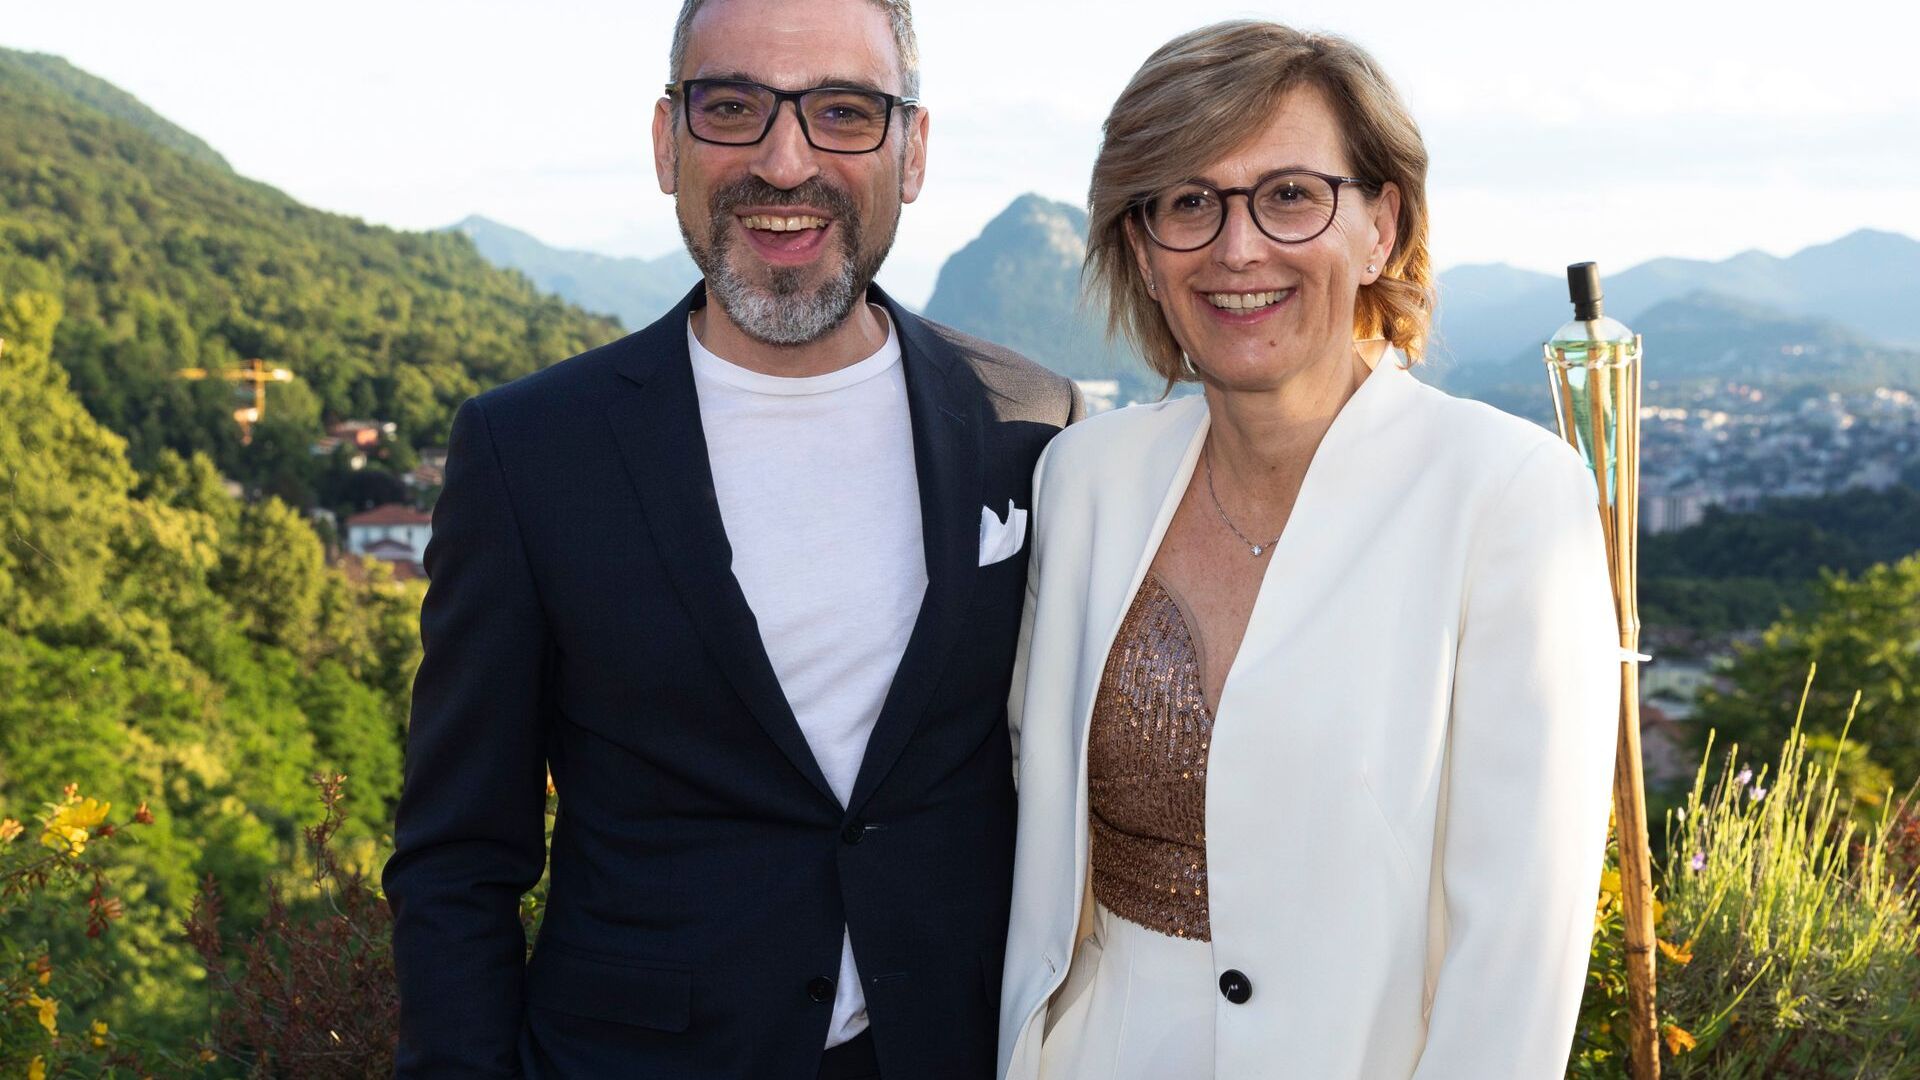 Cristina Giotto, prezidentka, a Luca Mauriello, viceprezident, ztělesňují nové vrcholové vedení ated-ICT Ticino